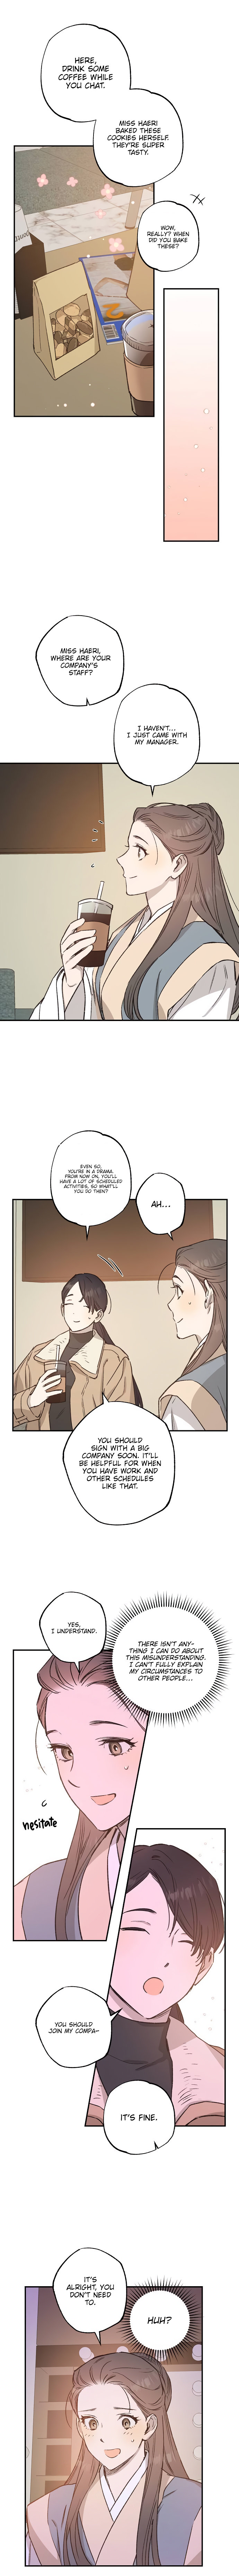 Onsaemiro - Chapter 29 Page 9